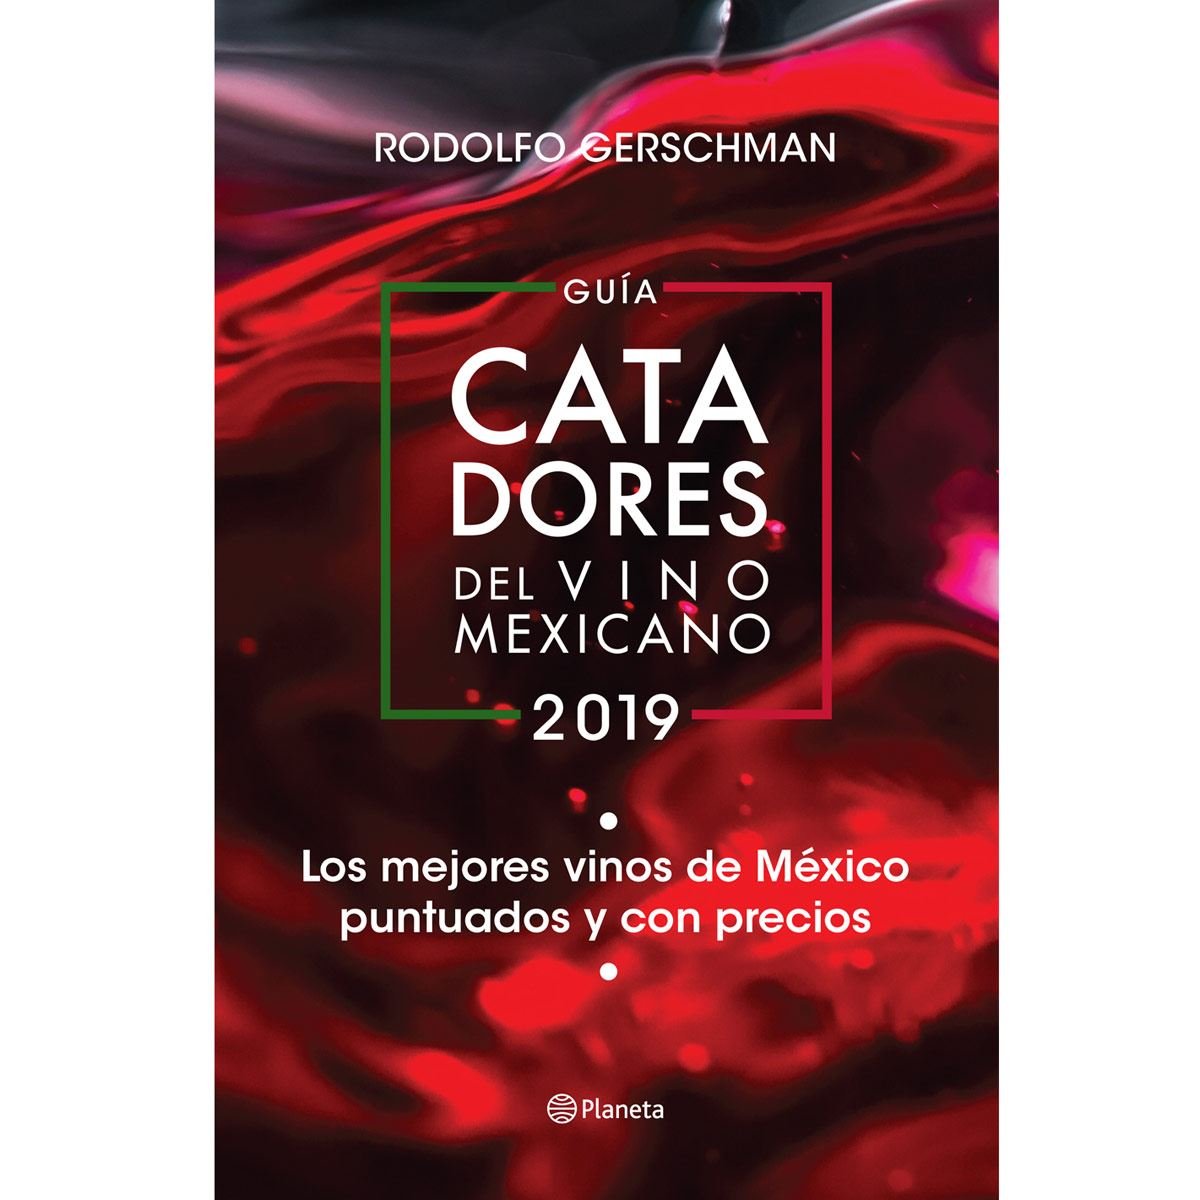 Guía de catadores del vino mexicano 2019